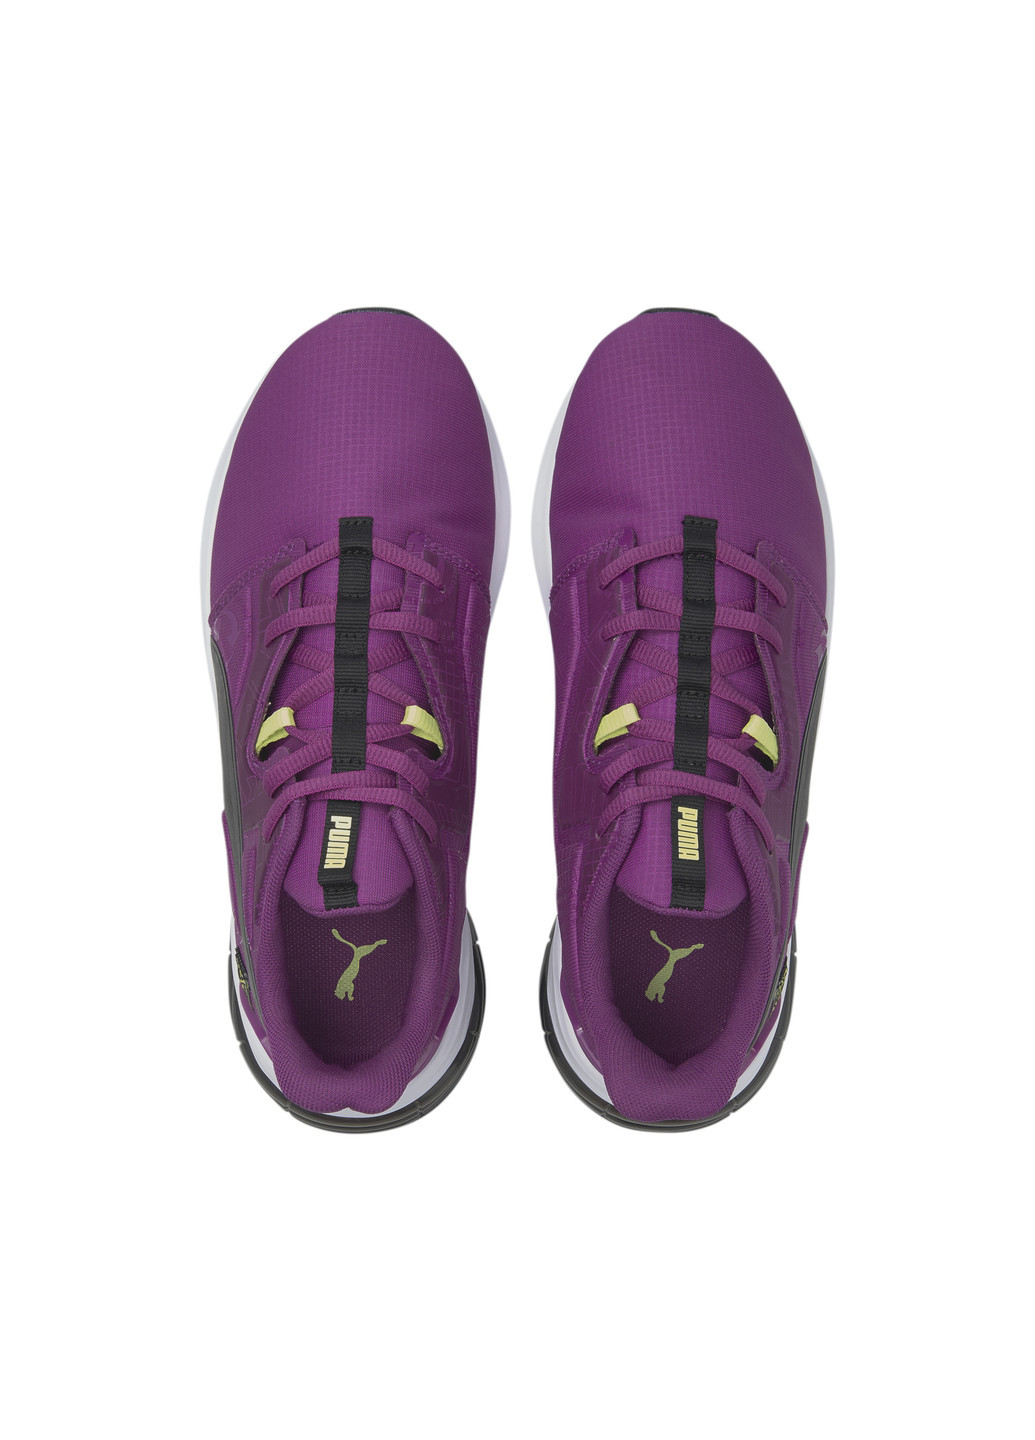 Пурпурные всесезонные кроссовки x first mile lvl-up women's training shoes Puma